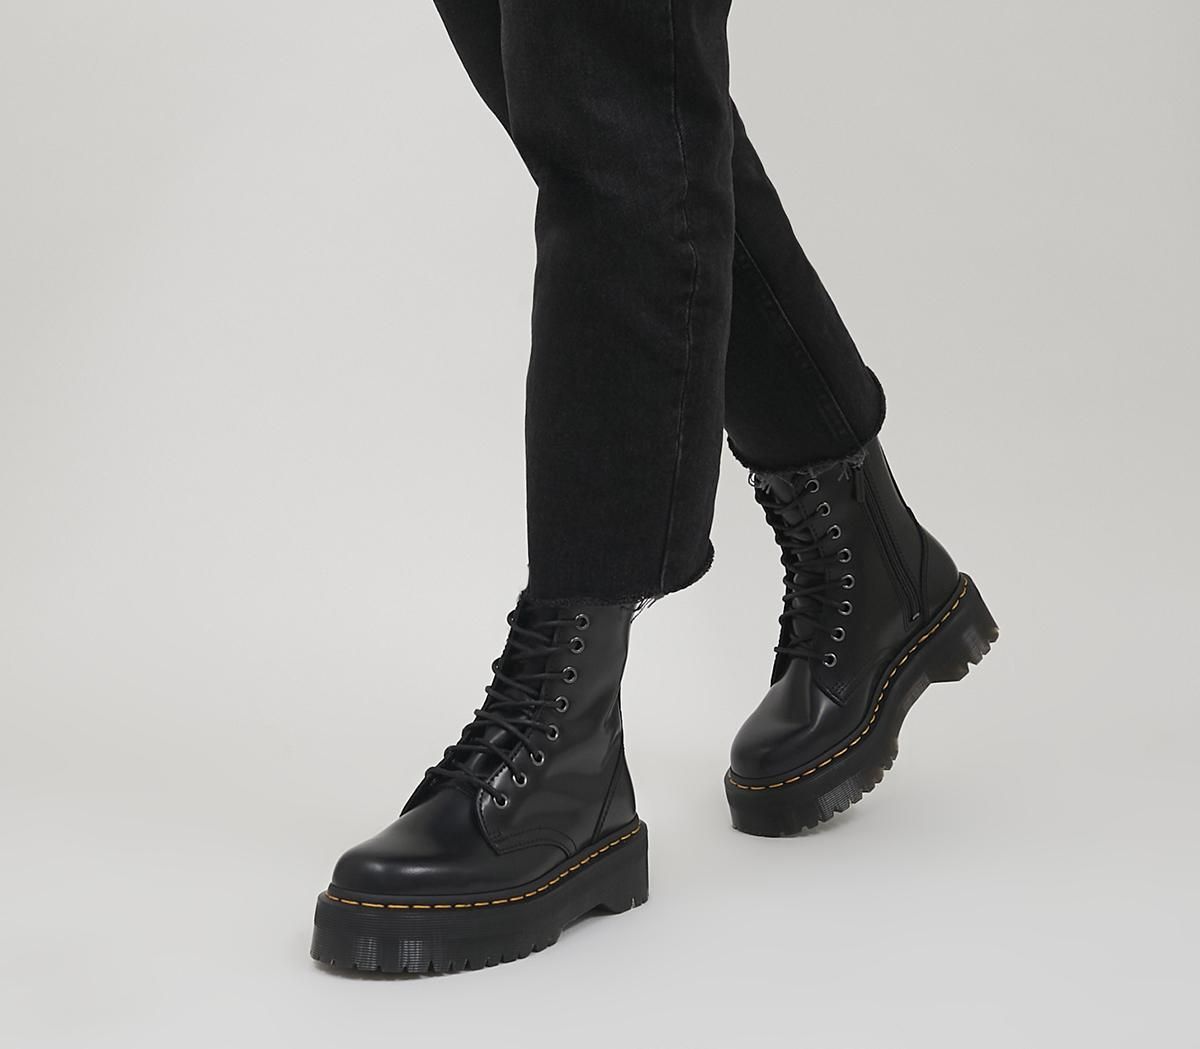 Dr. Martens Jadon 8 Eye Boots Black - Ankle Boots | OFFICE London (UK)